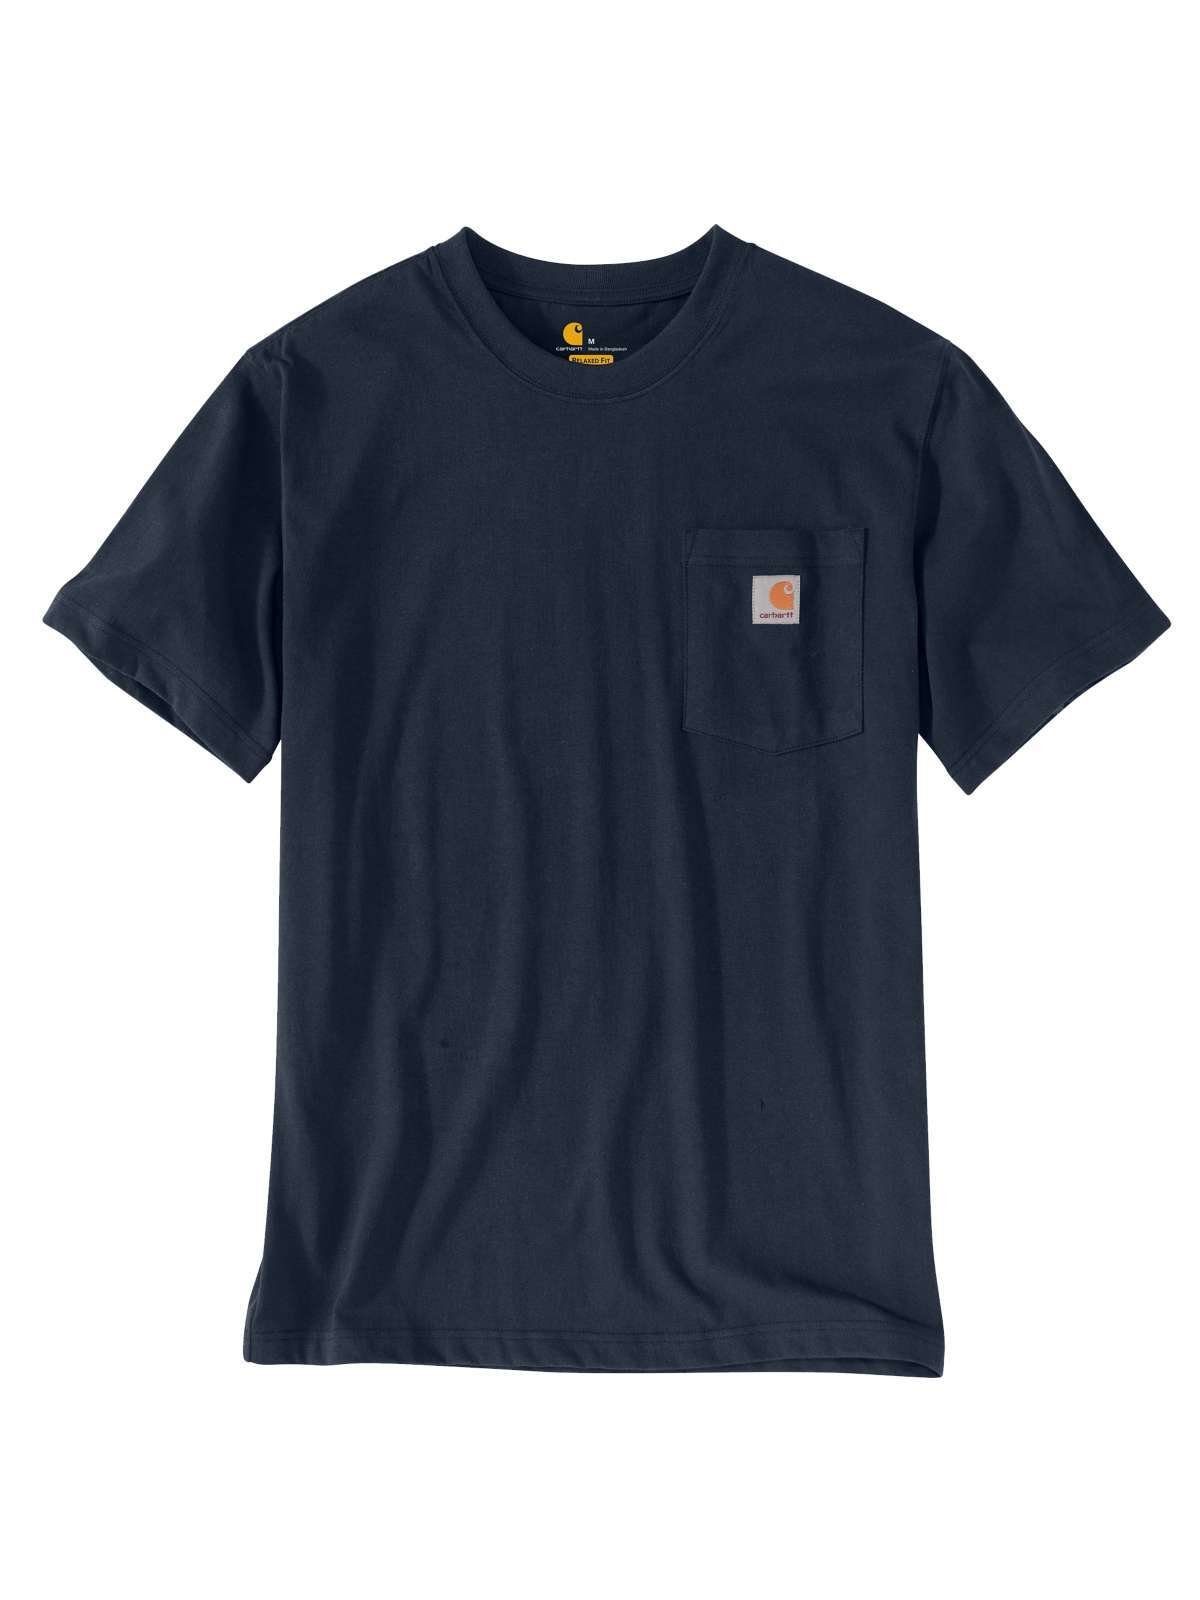 Carhartt T-Shirt schwarz NAVY Pocket Carhartt T-Shirt Herren